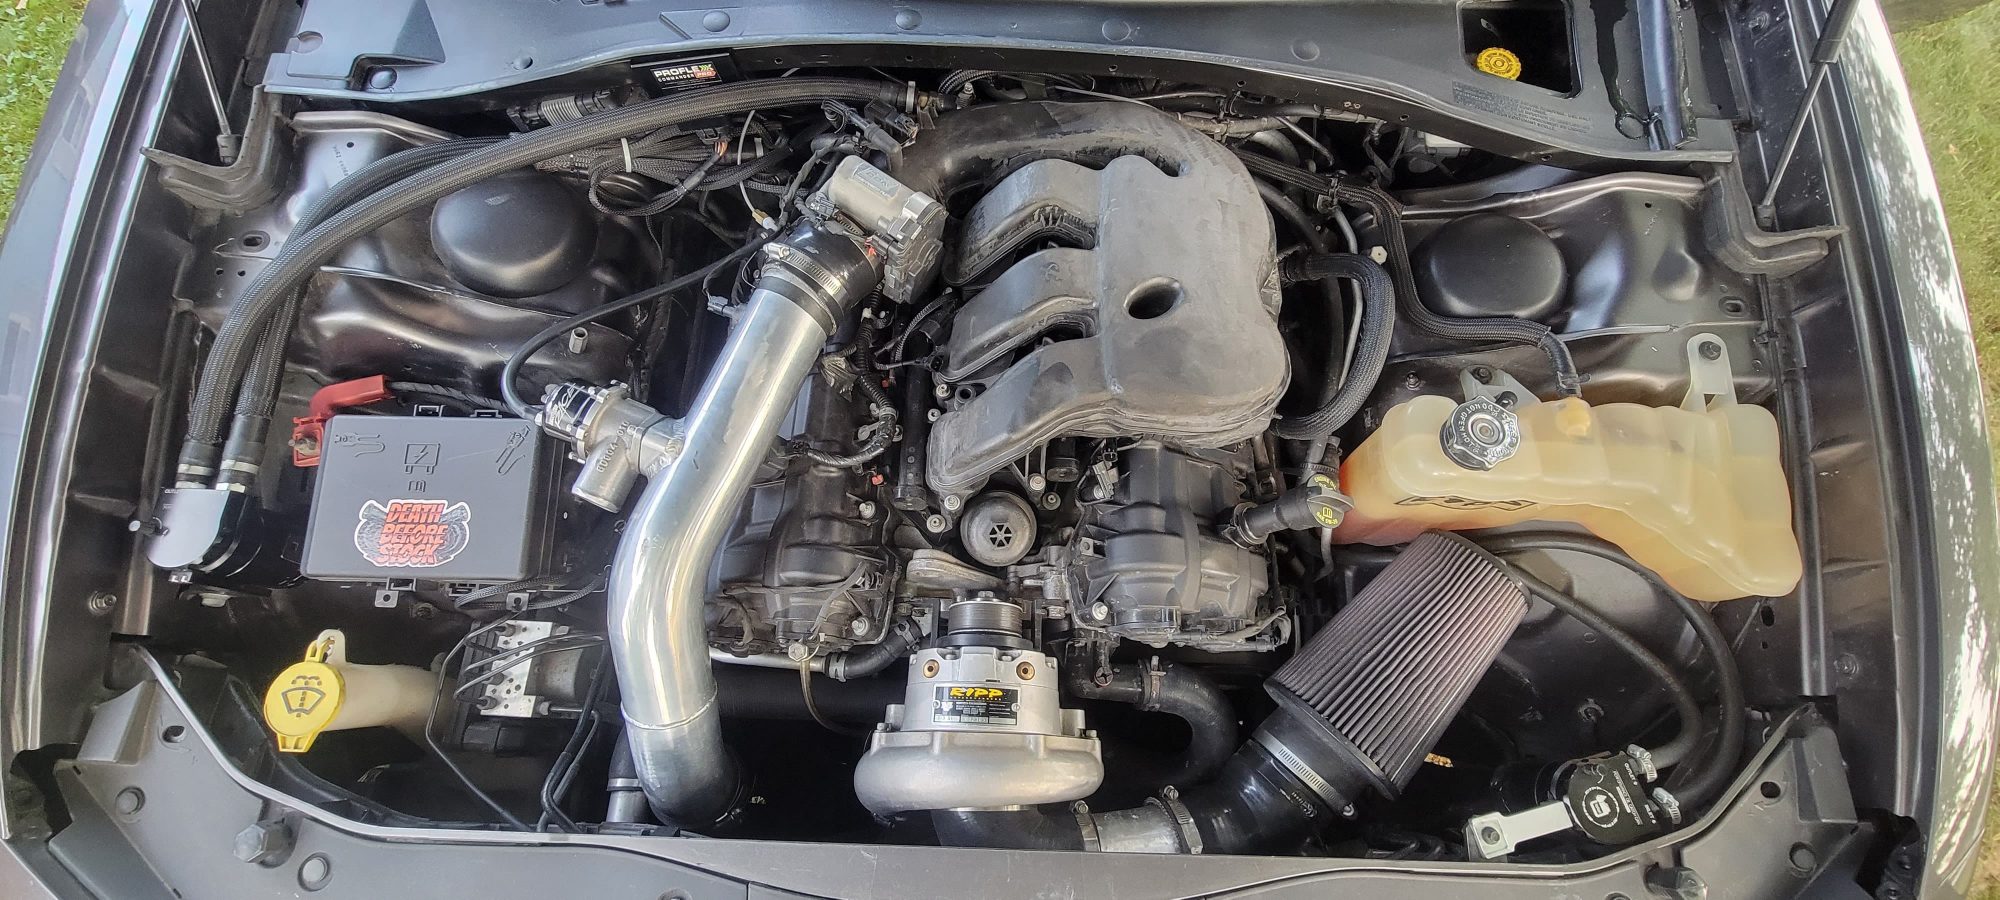 How To Make A Homemade V6 Engine